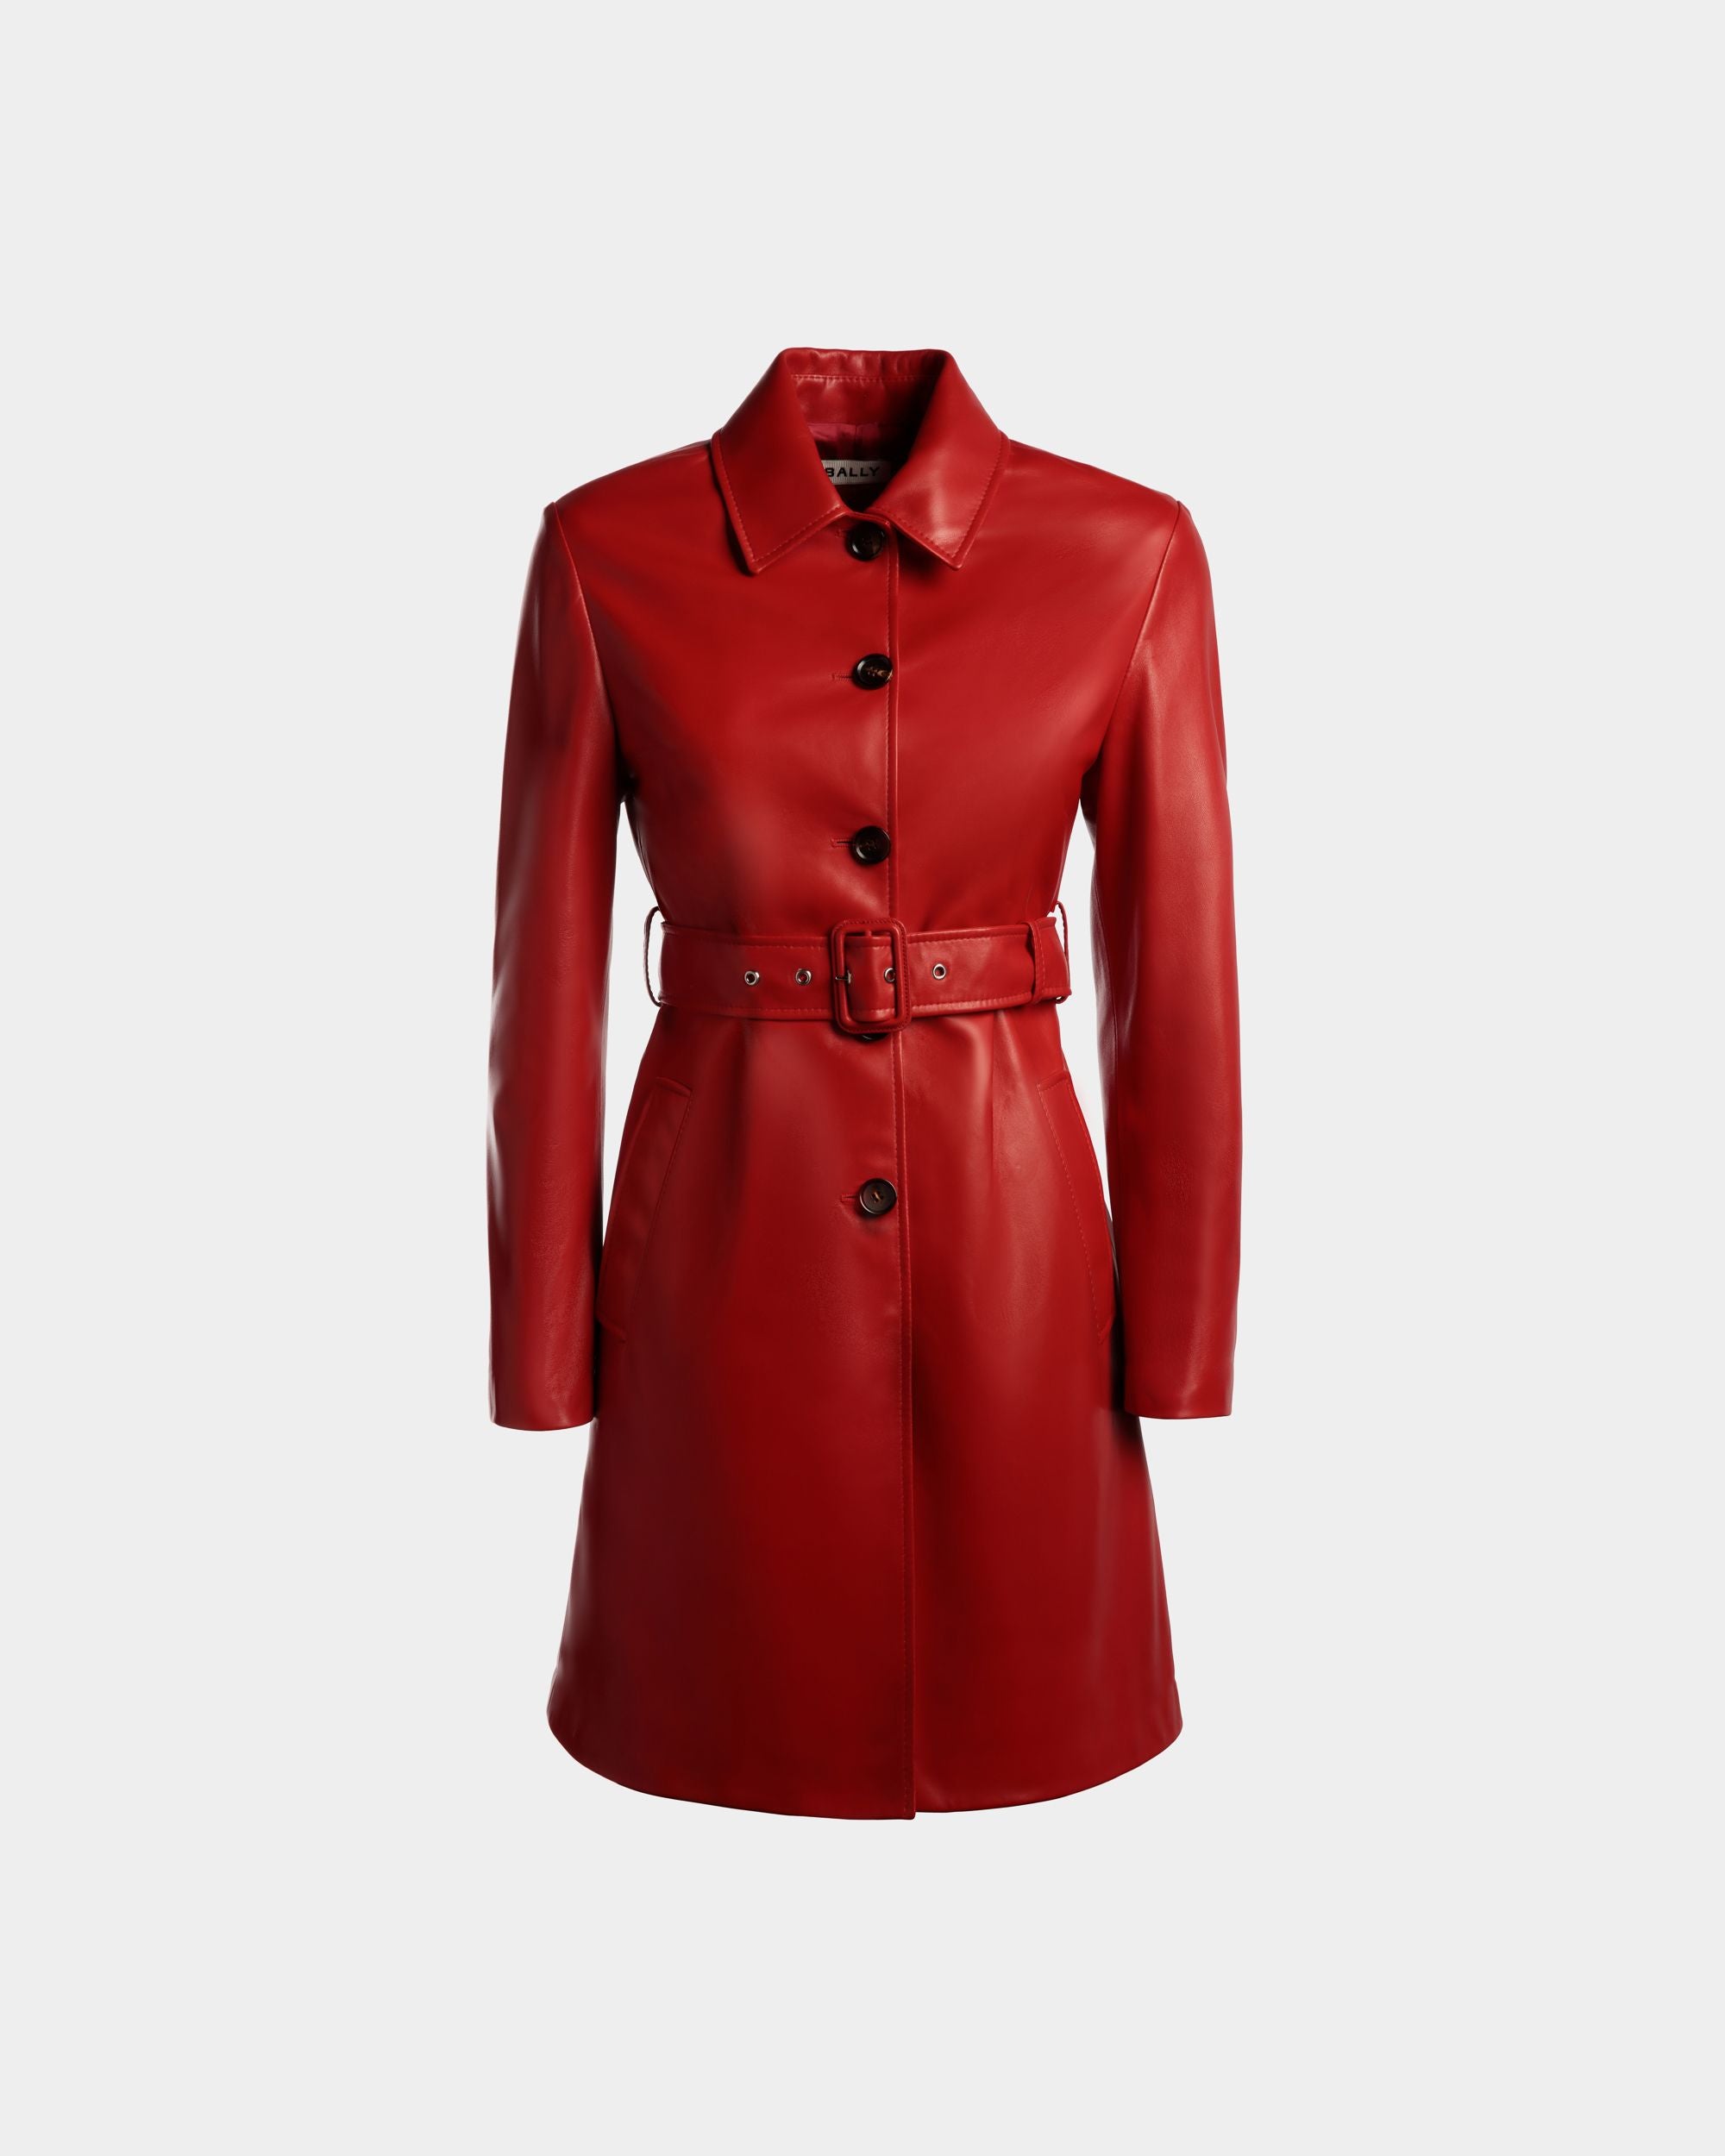 Cappotto midi da donna in pelle Candy Red con cintura | Bally | Still Life Fronte